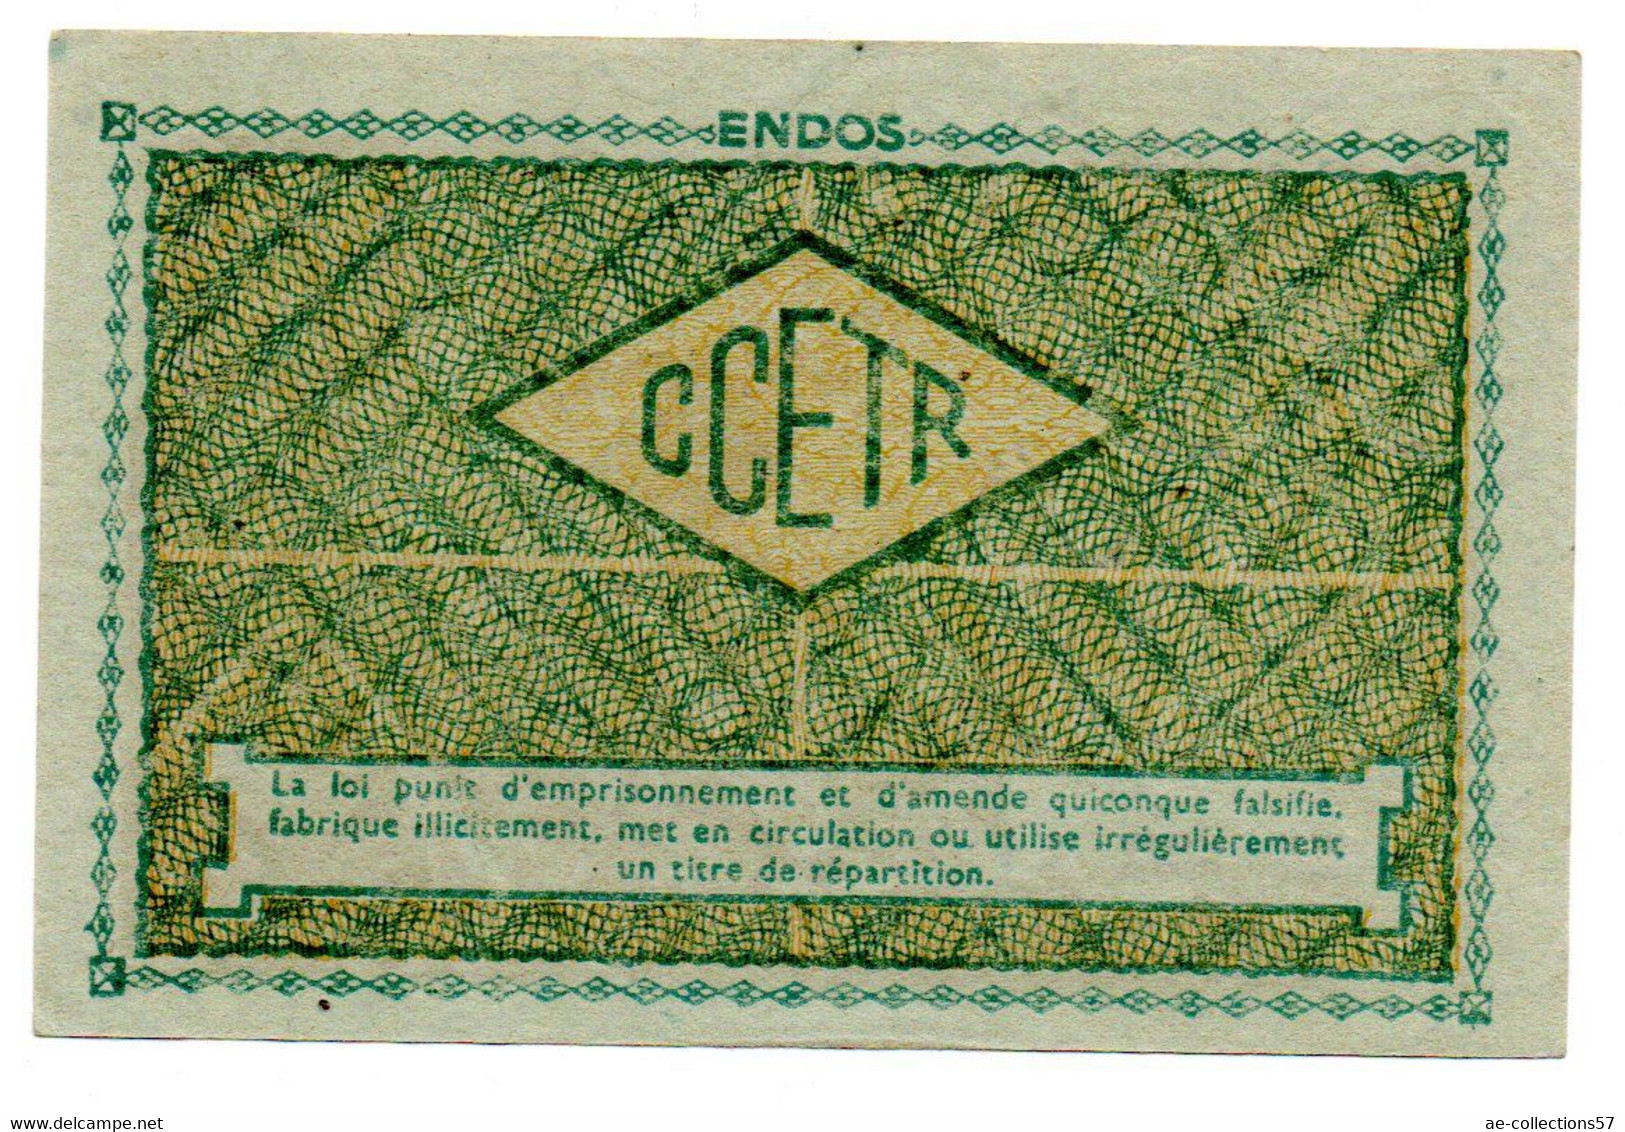 France -  1 KG Acier Ordinaire 31/12/1948 -  O C R P I -  SPL - Notgeld